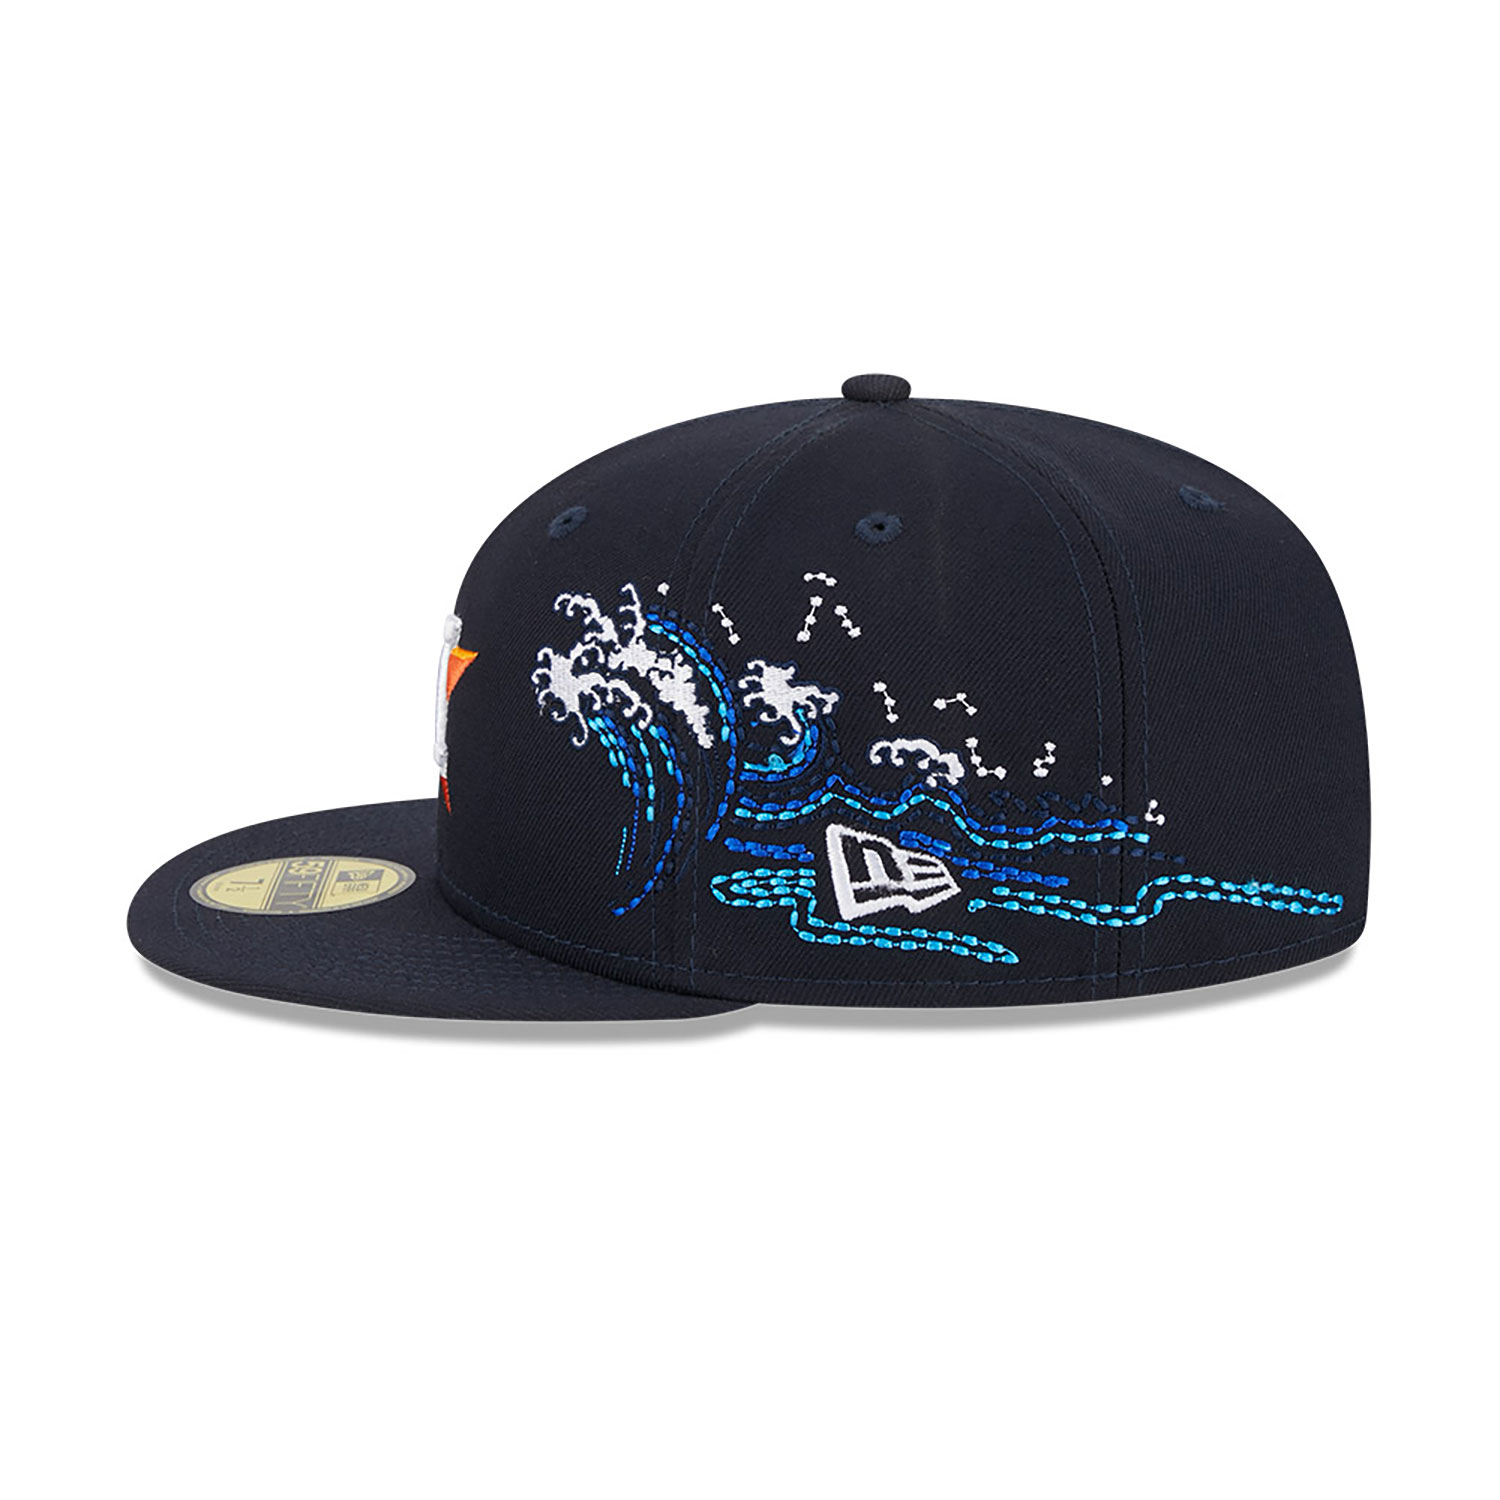 New Era 5950 MLB X STAR WARS NEW DETROIT TIGERS Cap Hat Men’s Size 7 1/4